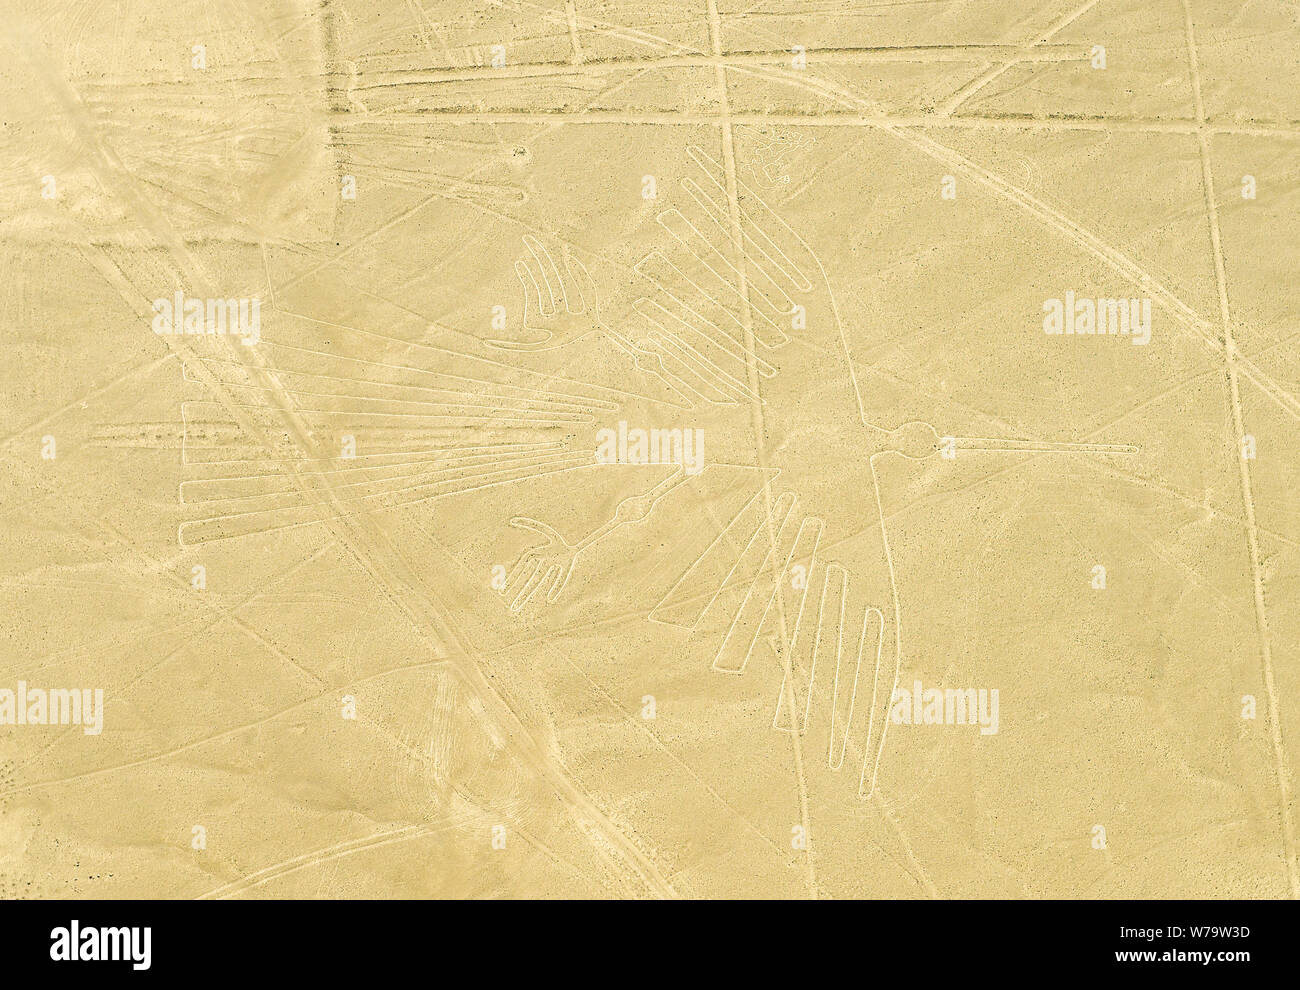 La figure de géoglyphe de Condor dans le désert côtier péruvien connu sous le nom de lignes mystérieuses de Nazca, désert de Nazca, Pérou. Banque D'Images